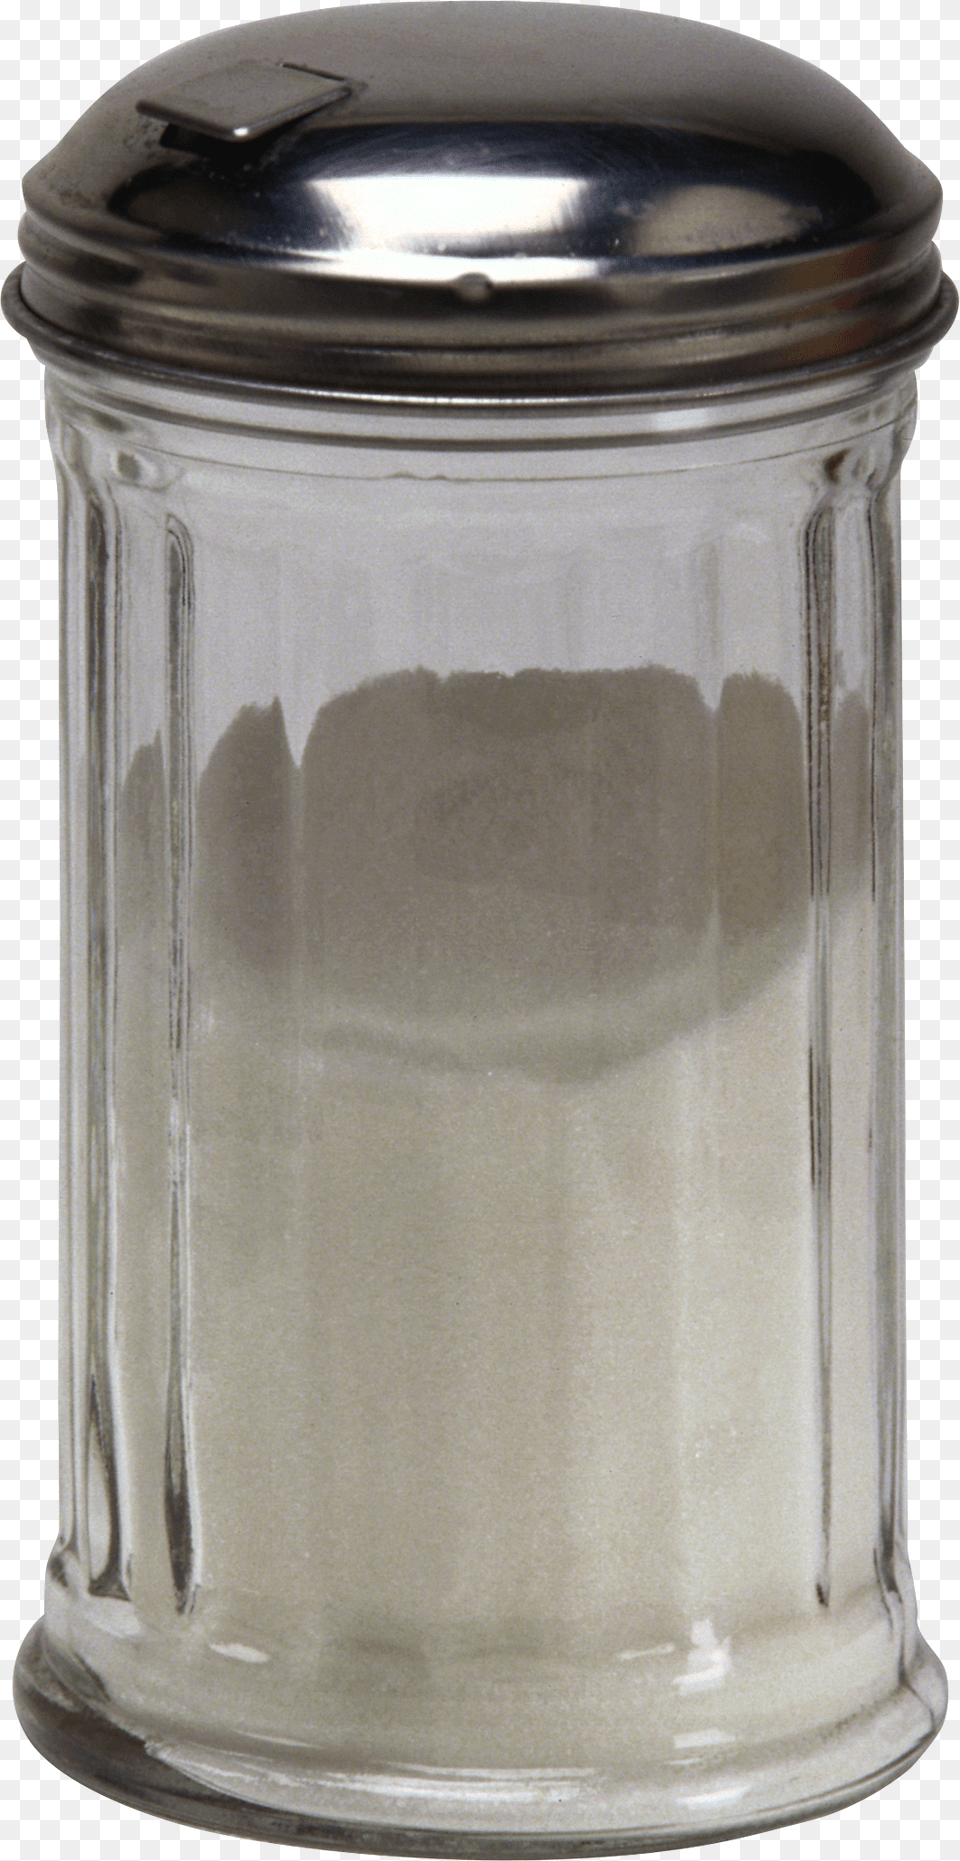 Salt, Jar, Bottle, Shaker, Can Png Image